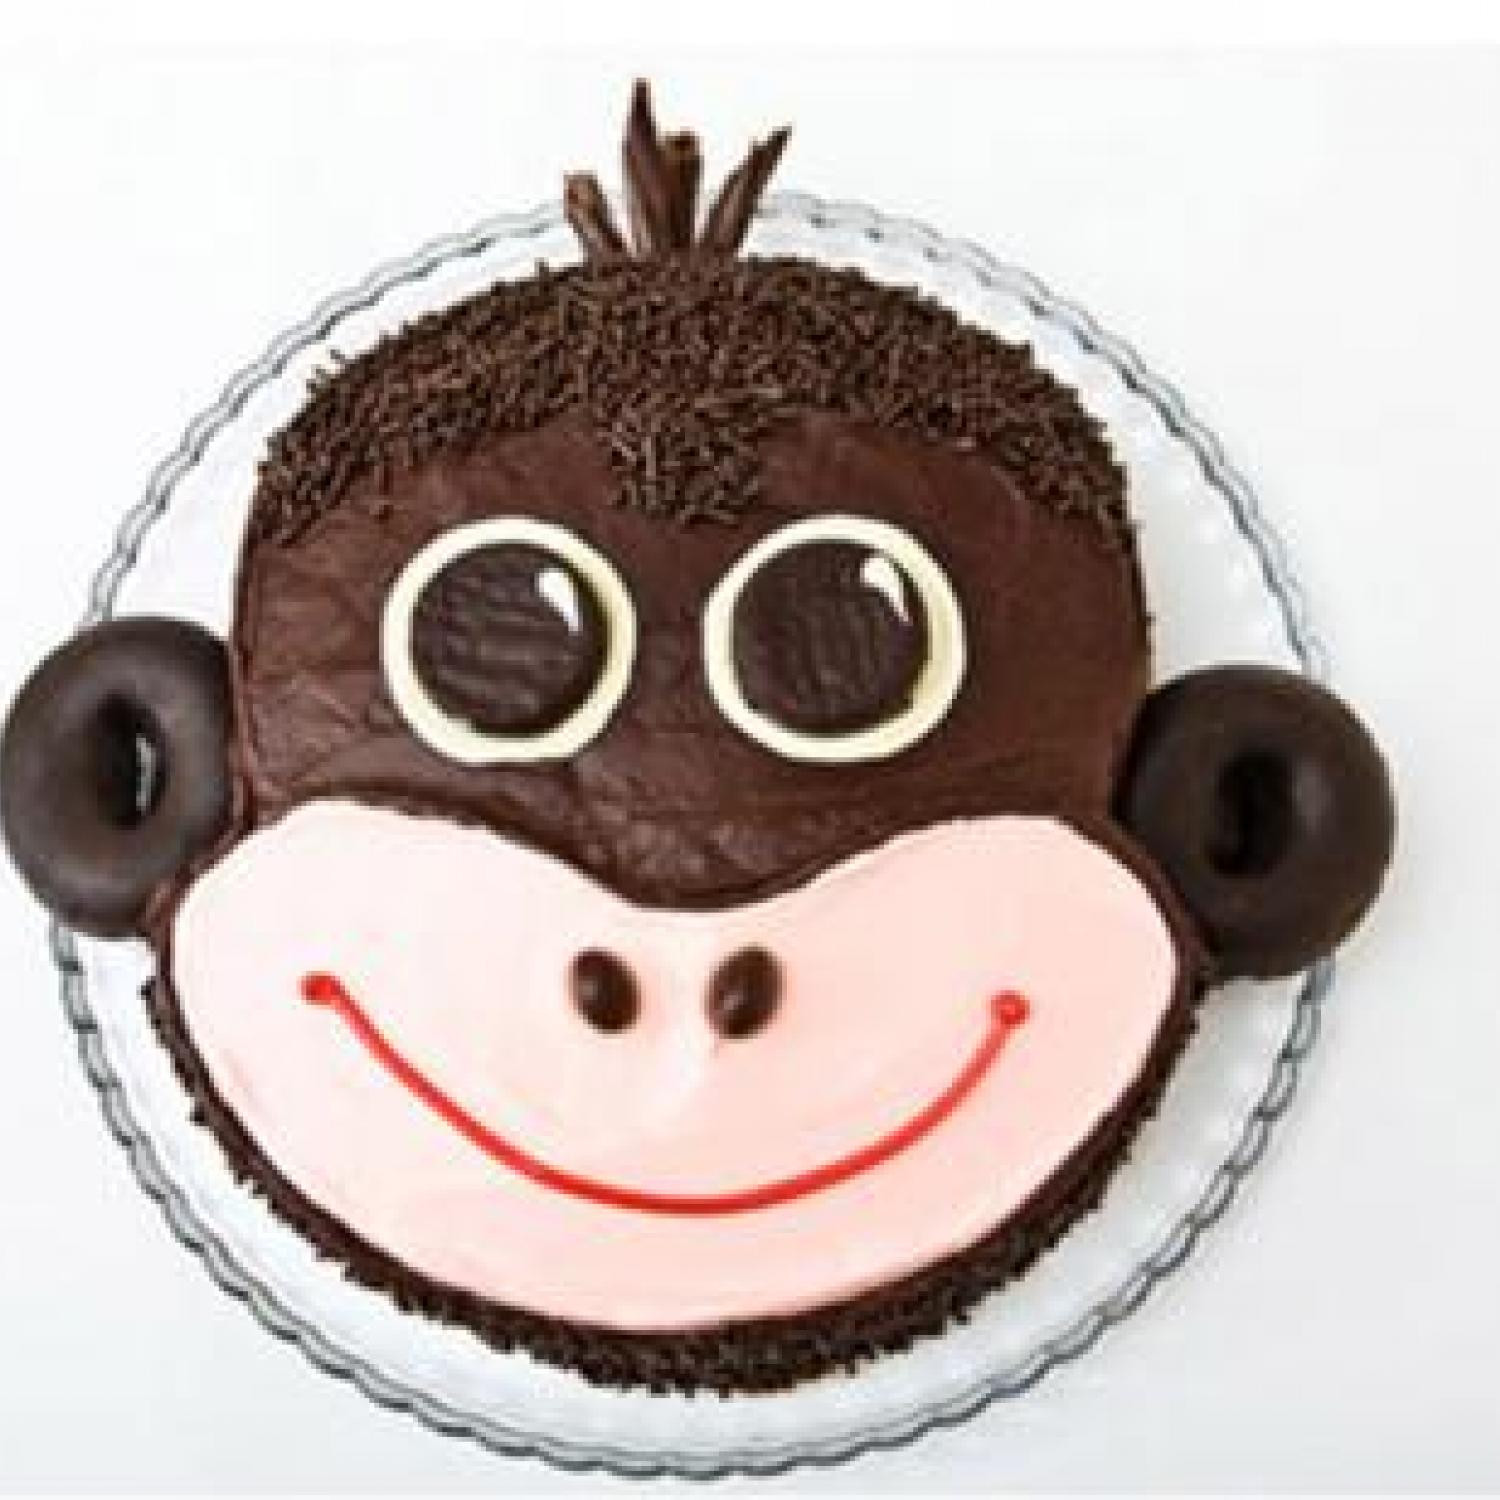 Monkey Birthday Cakes
 Monkey Birthday Cake Design